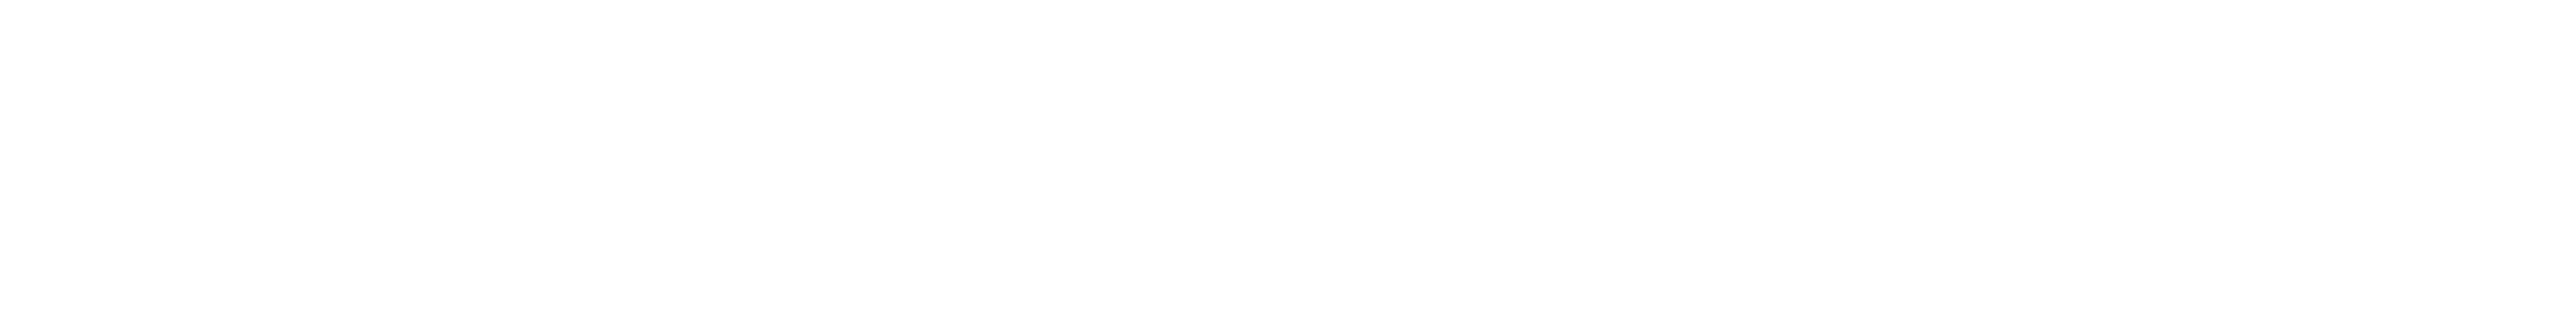 東京工業大学社会人アカデミー